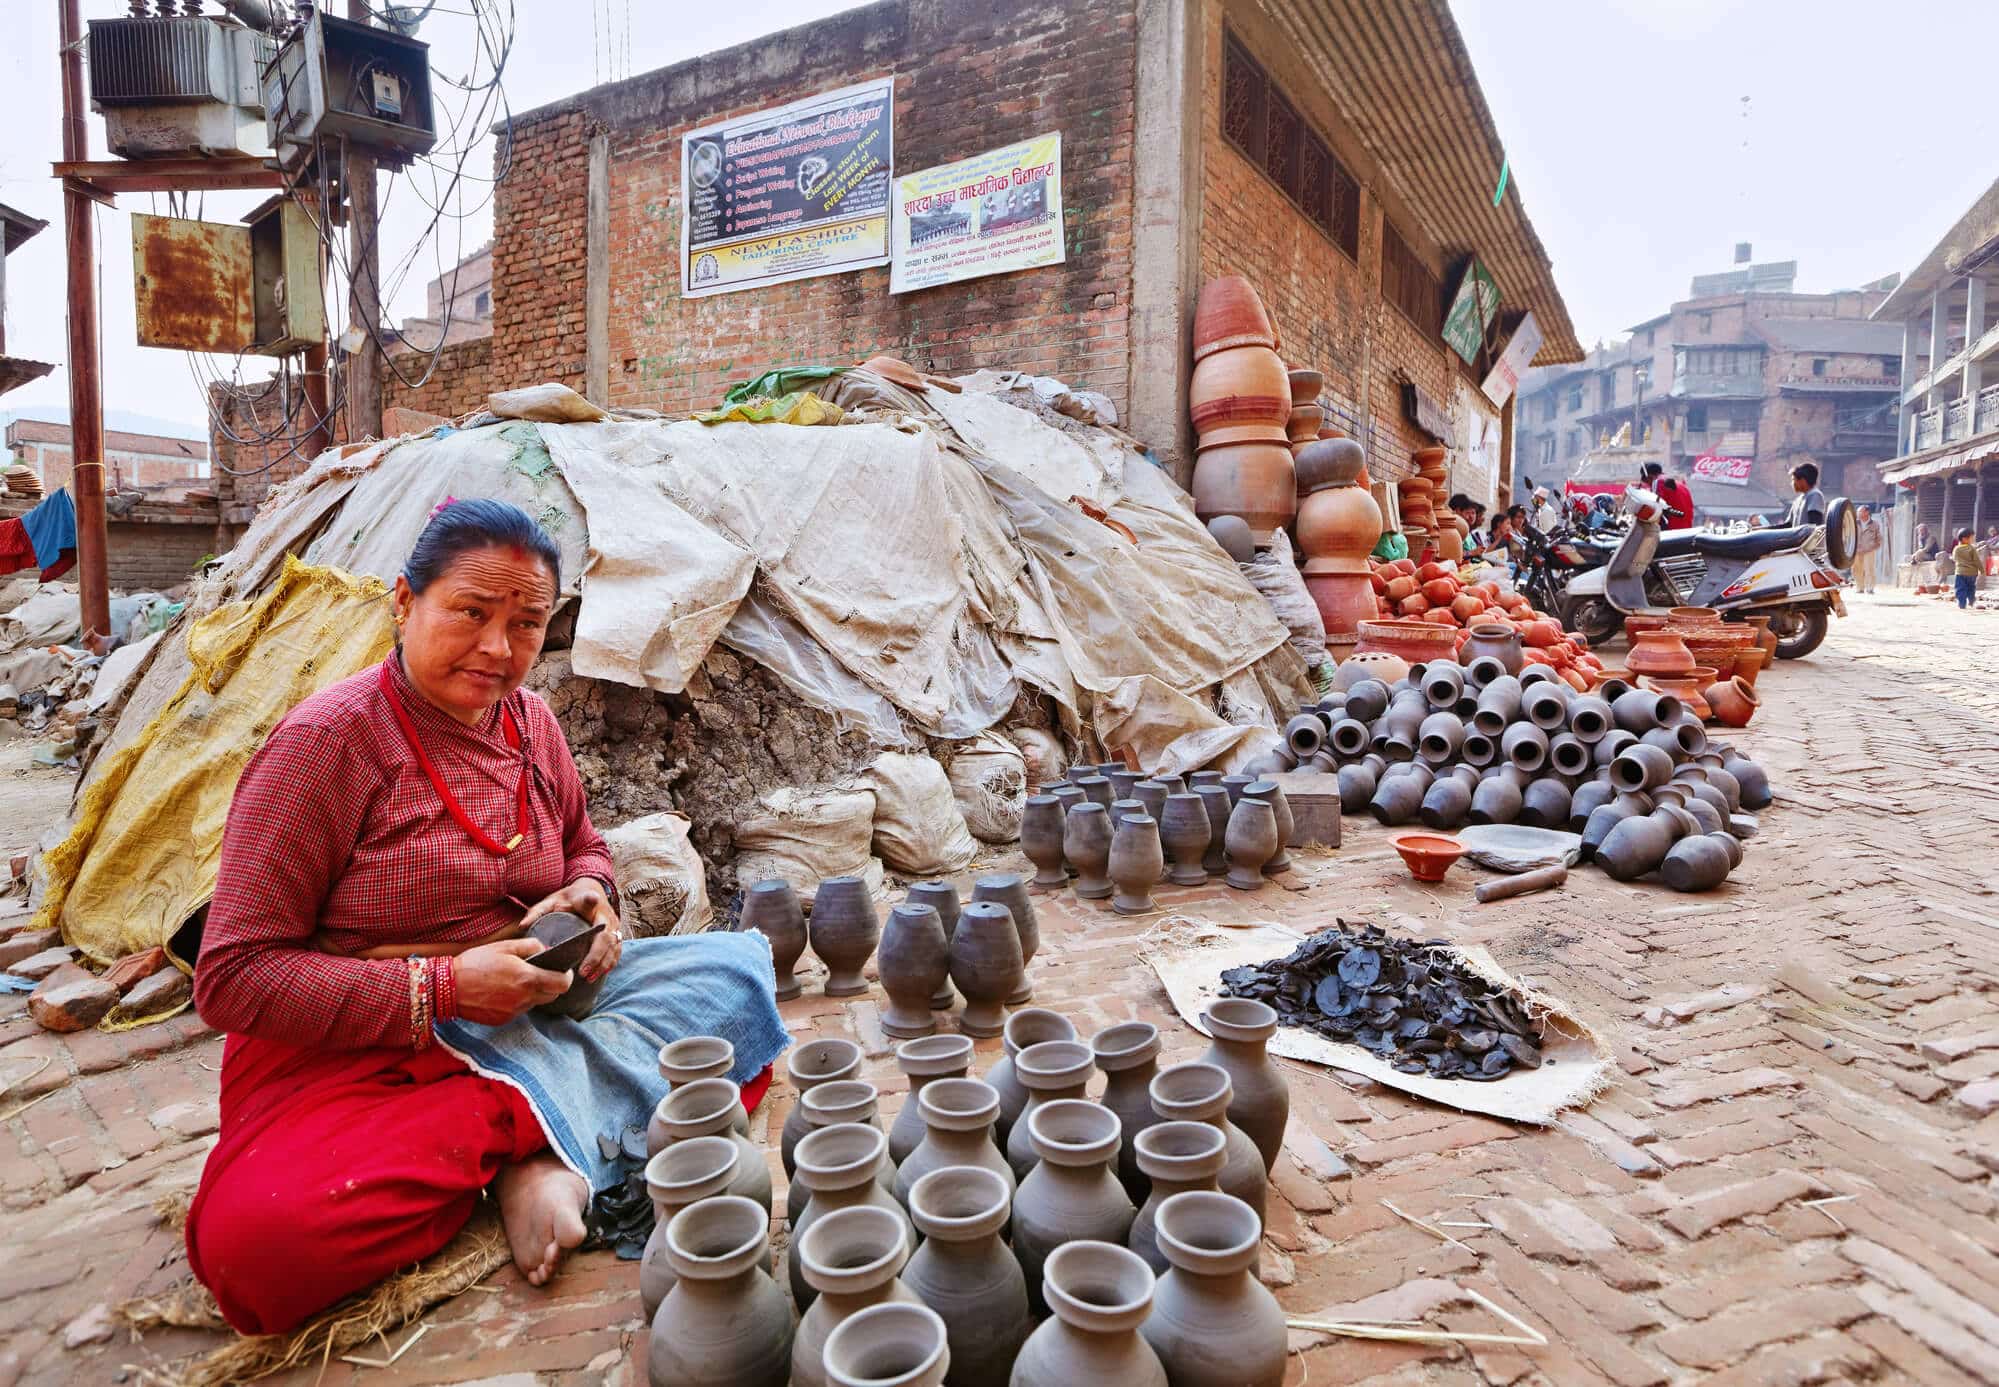 סוחרת כדים בנפאל. <a href="https://depositphotos.com. ">המחשה: depositphotos.com</a>